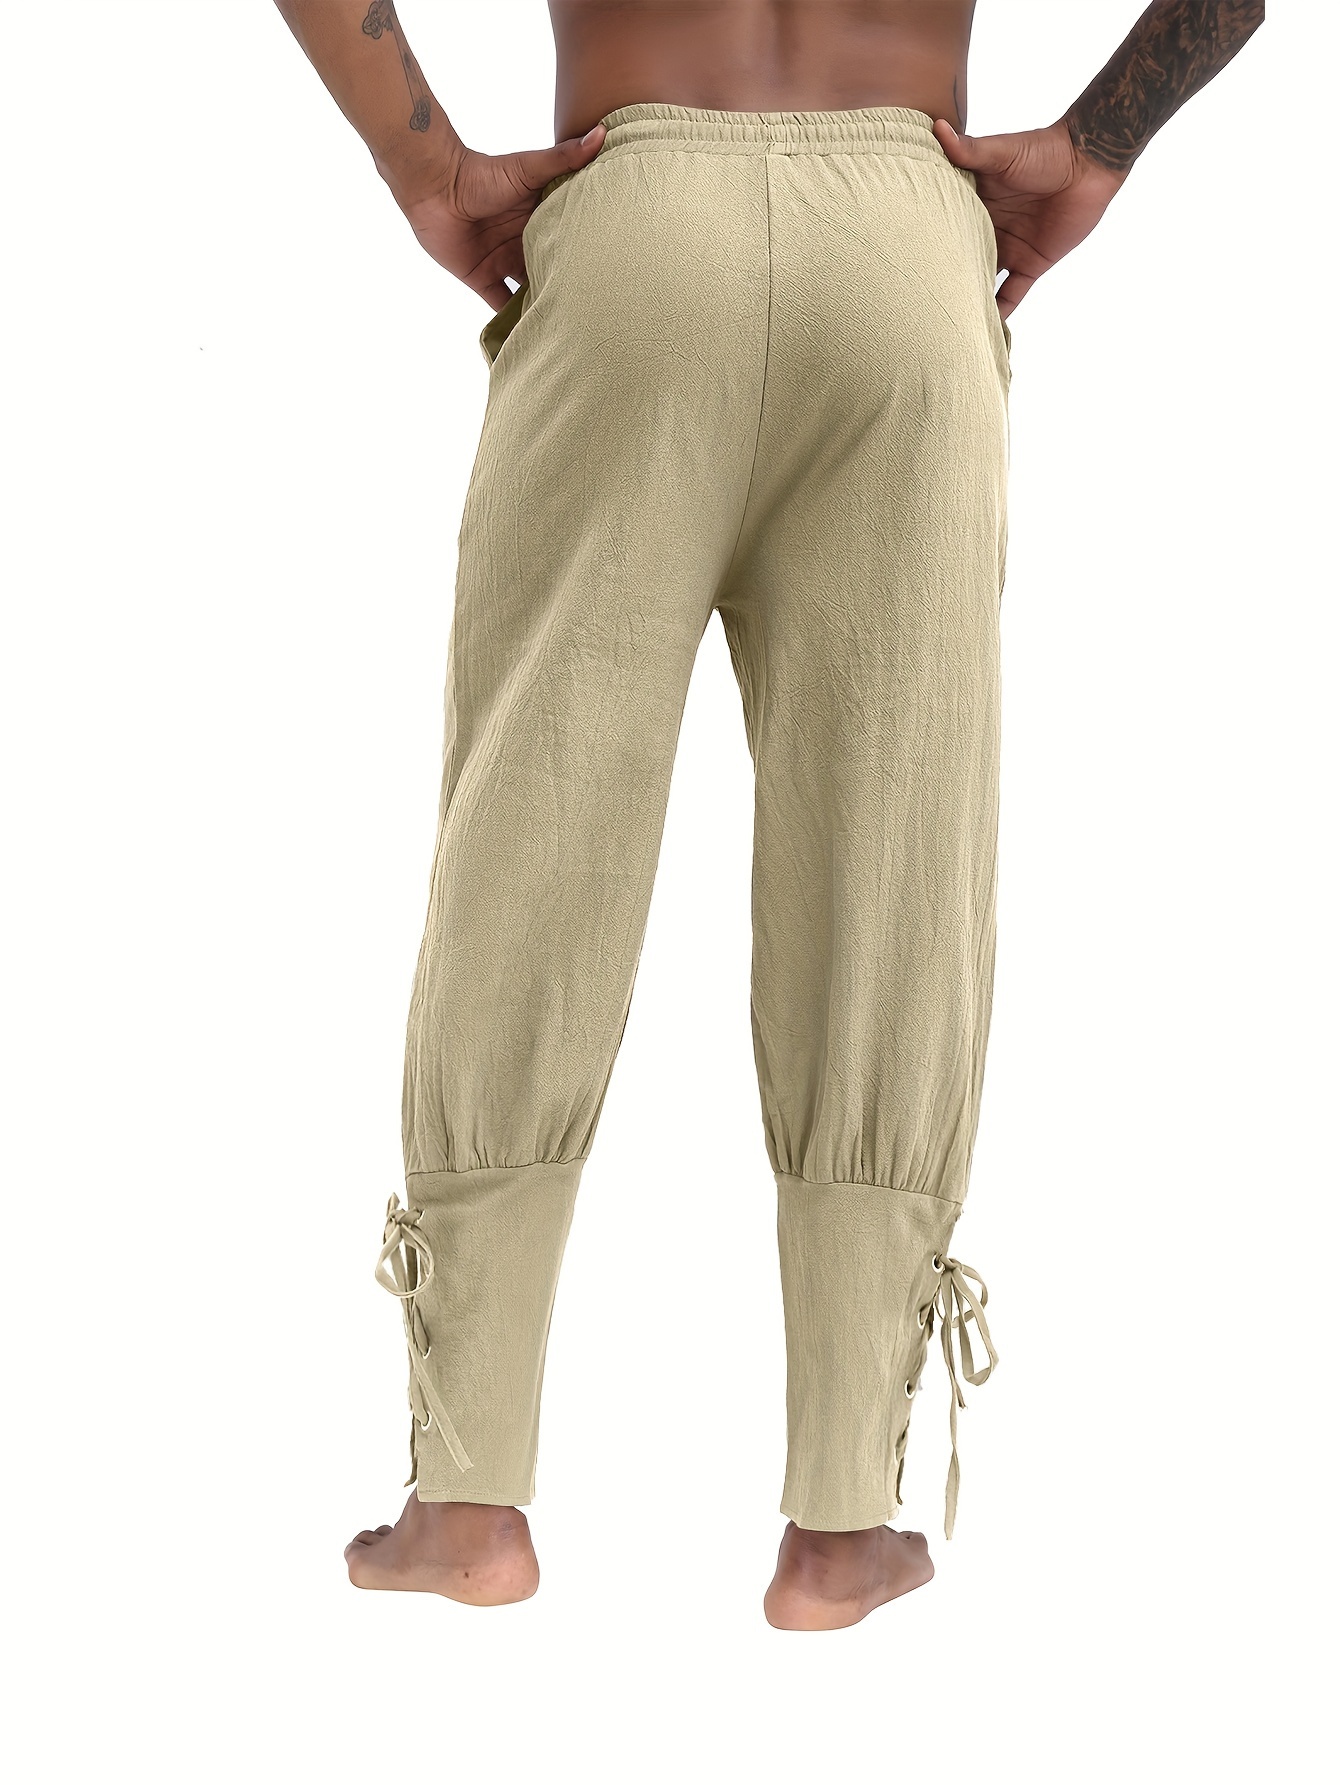 Men's Retro Medieval Renaissance Lace Loose Trousers Pants - Temu